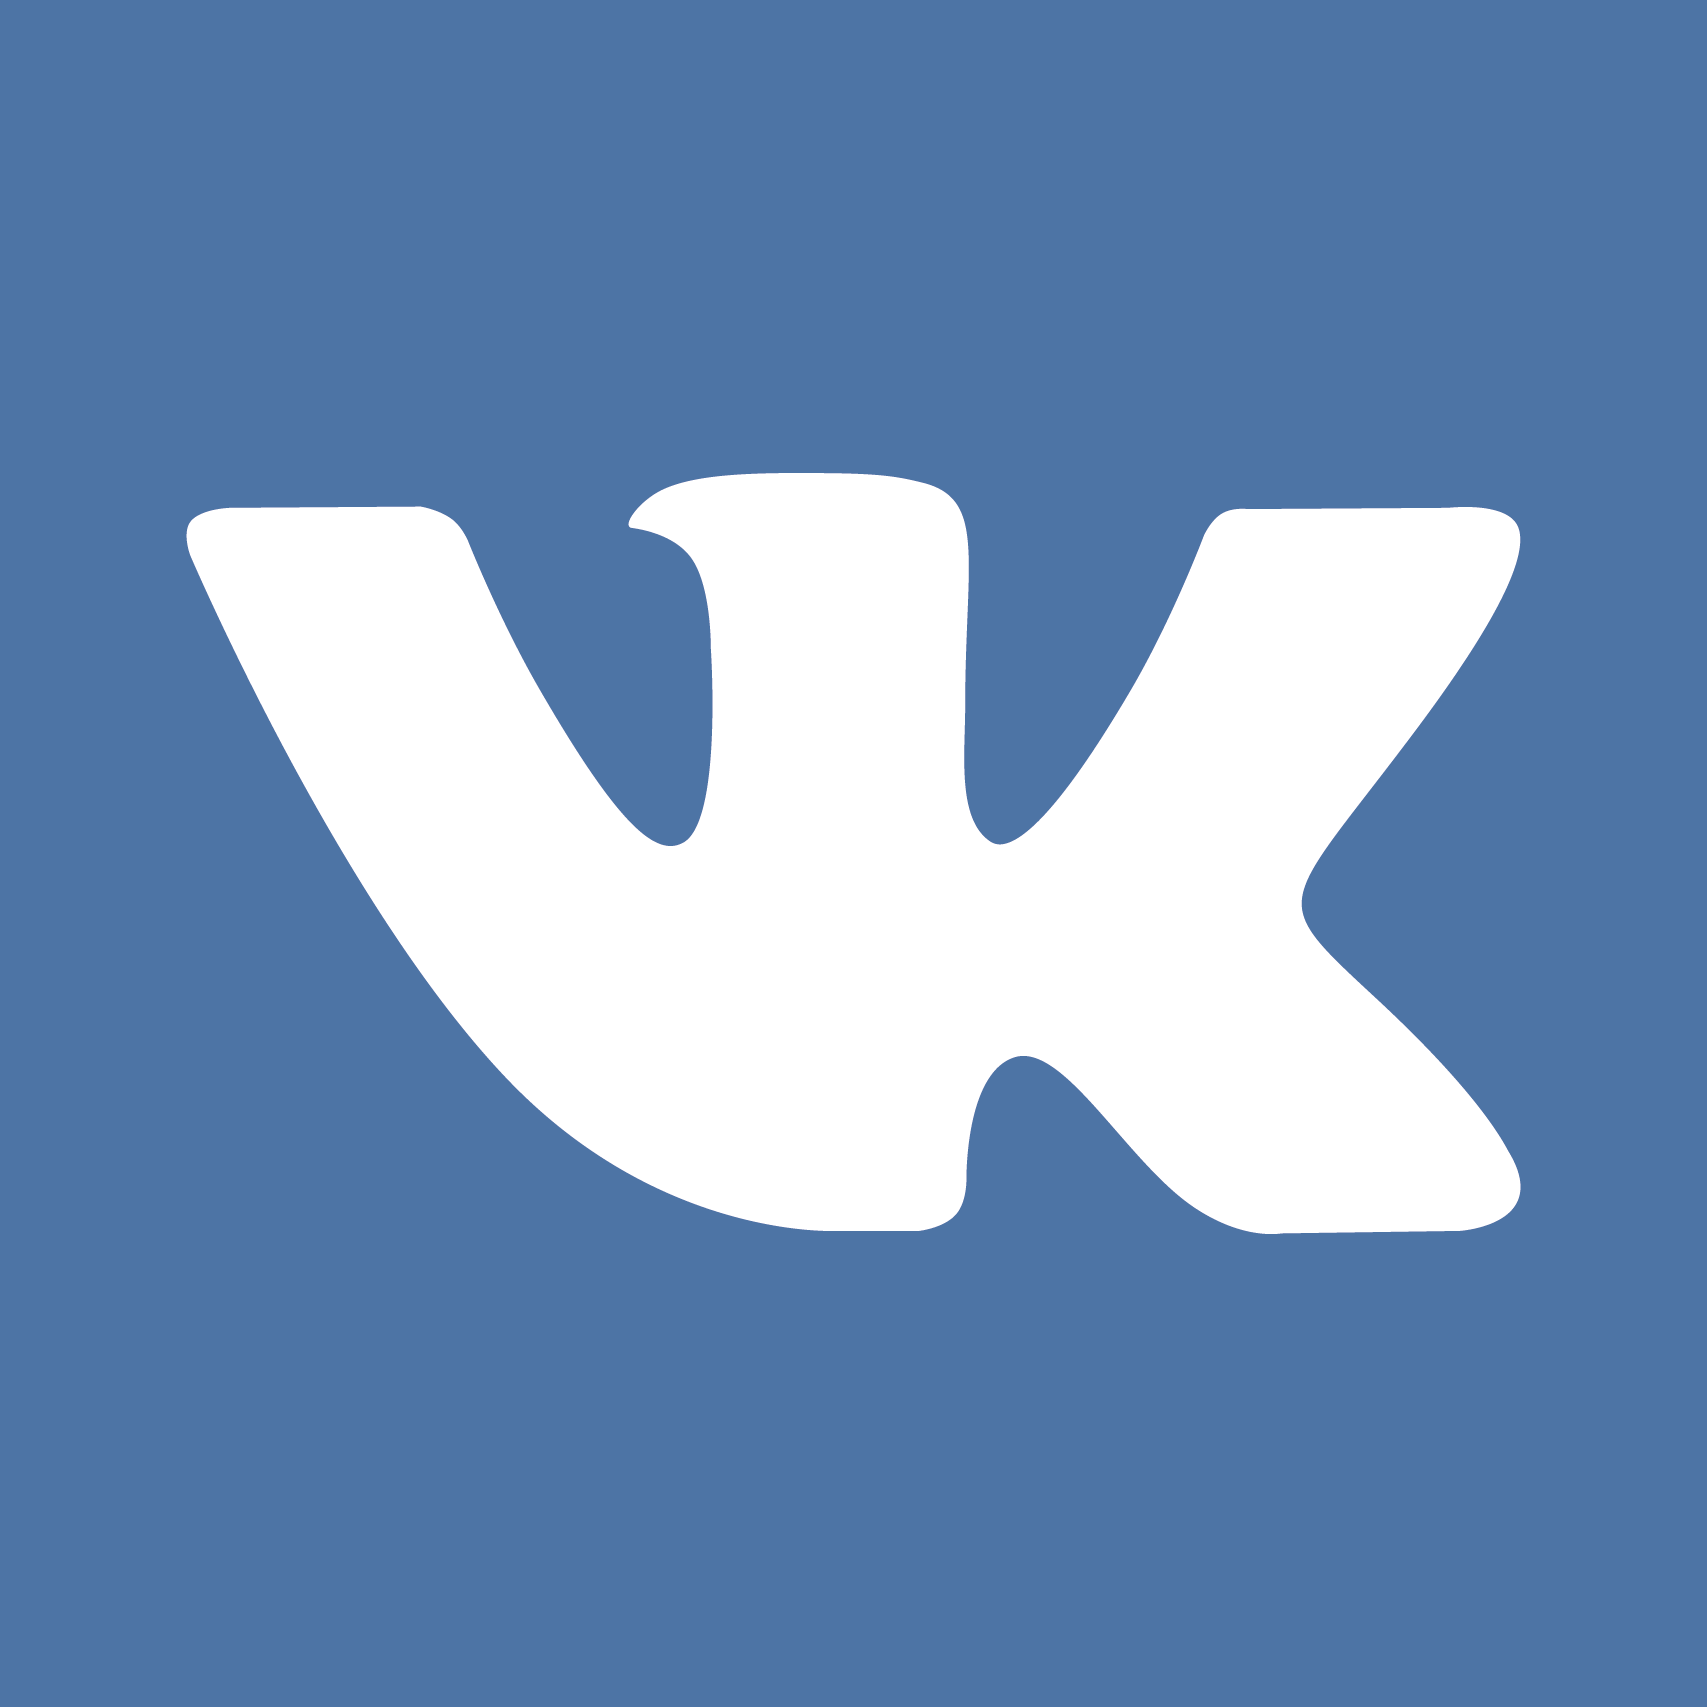 VK Logo [Social Networking - PDF]